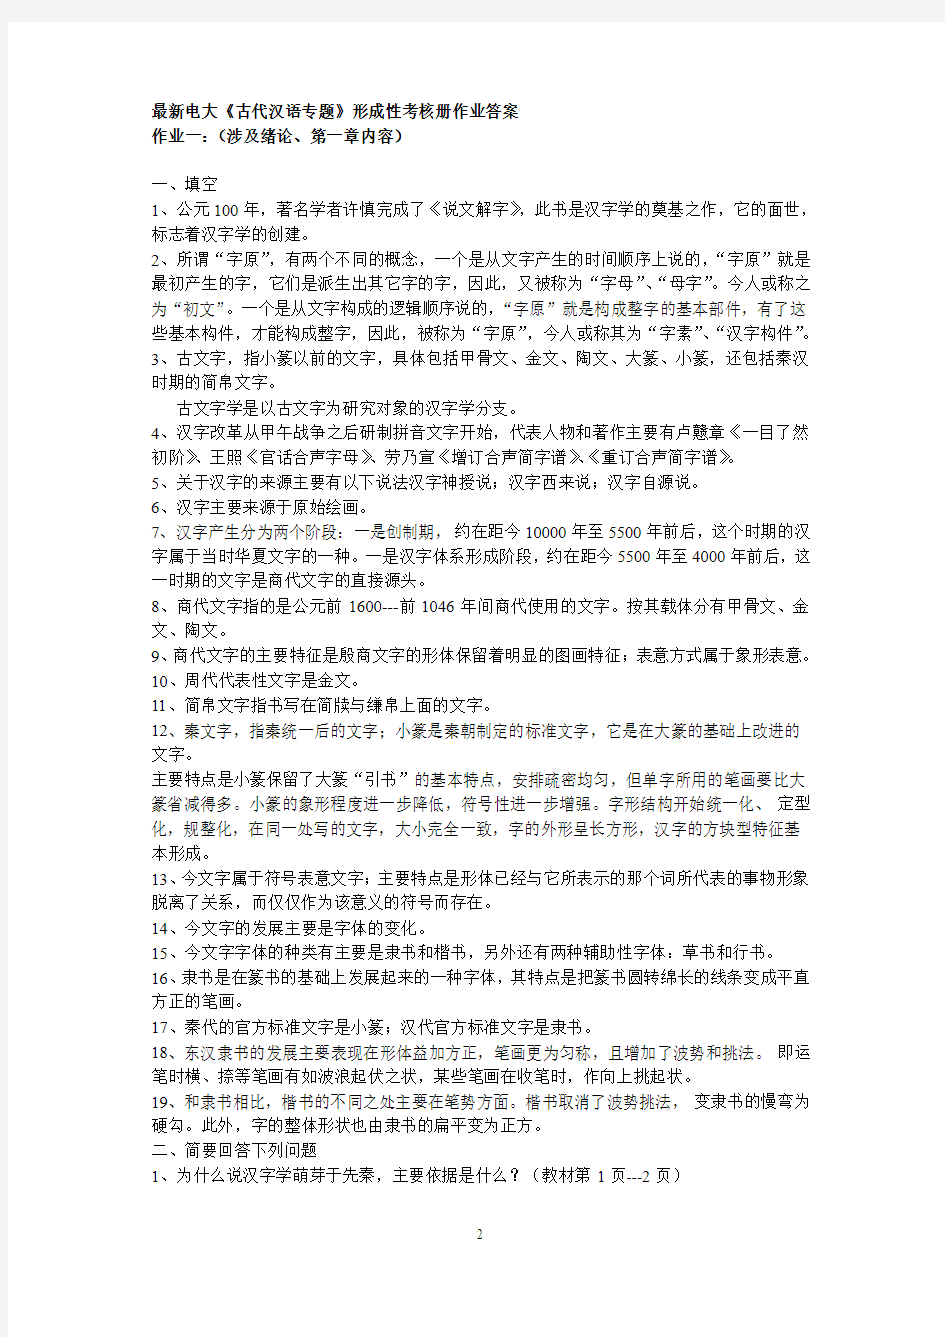 2017年电大最新古代汉语形成性考核册作业答案提示答案